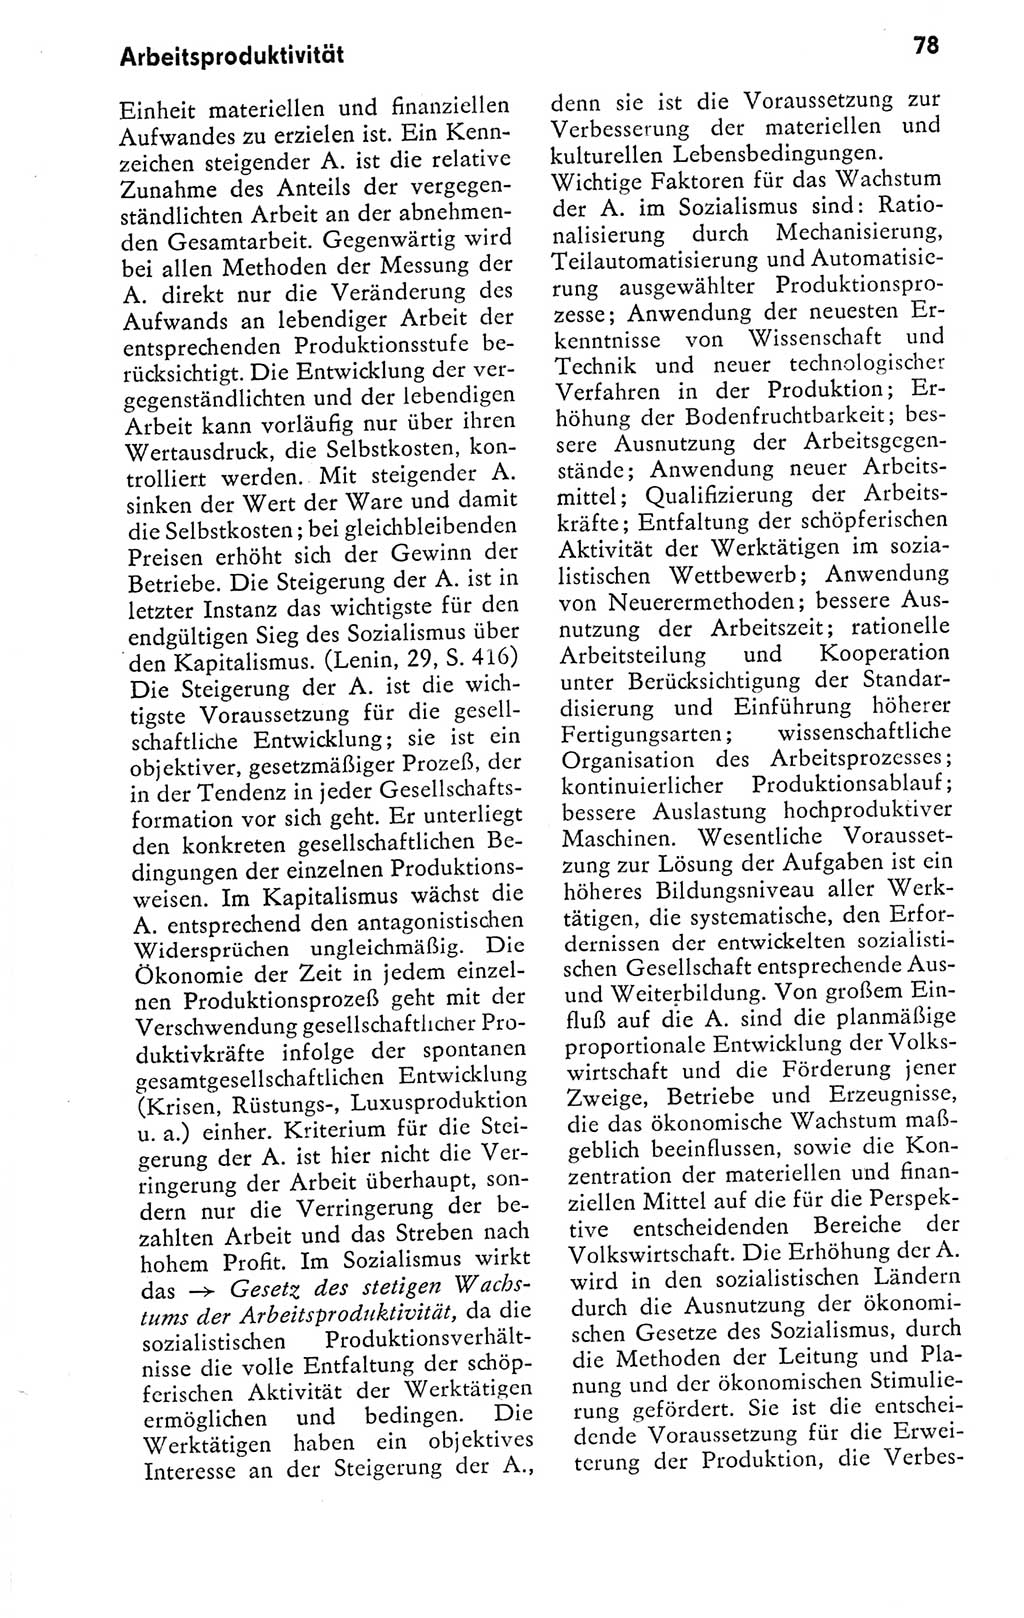 Kleines politisches Wörterbuch [Deutsche Demokratische Republik (DDR)] 1978, Seite 78 (Kl. pol. Wb. DDR 1978, S. 78)